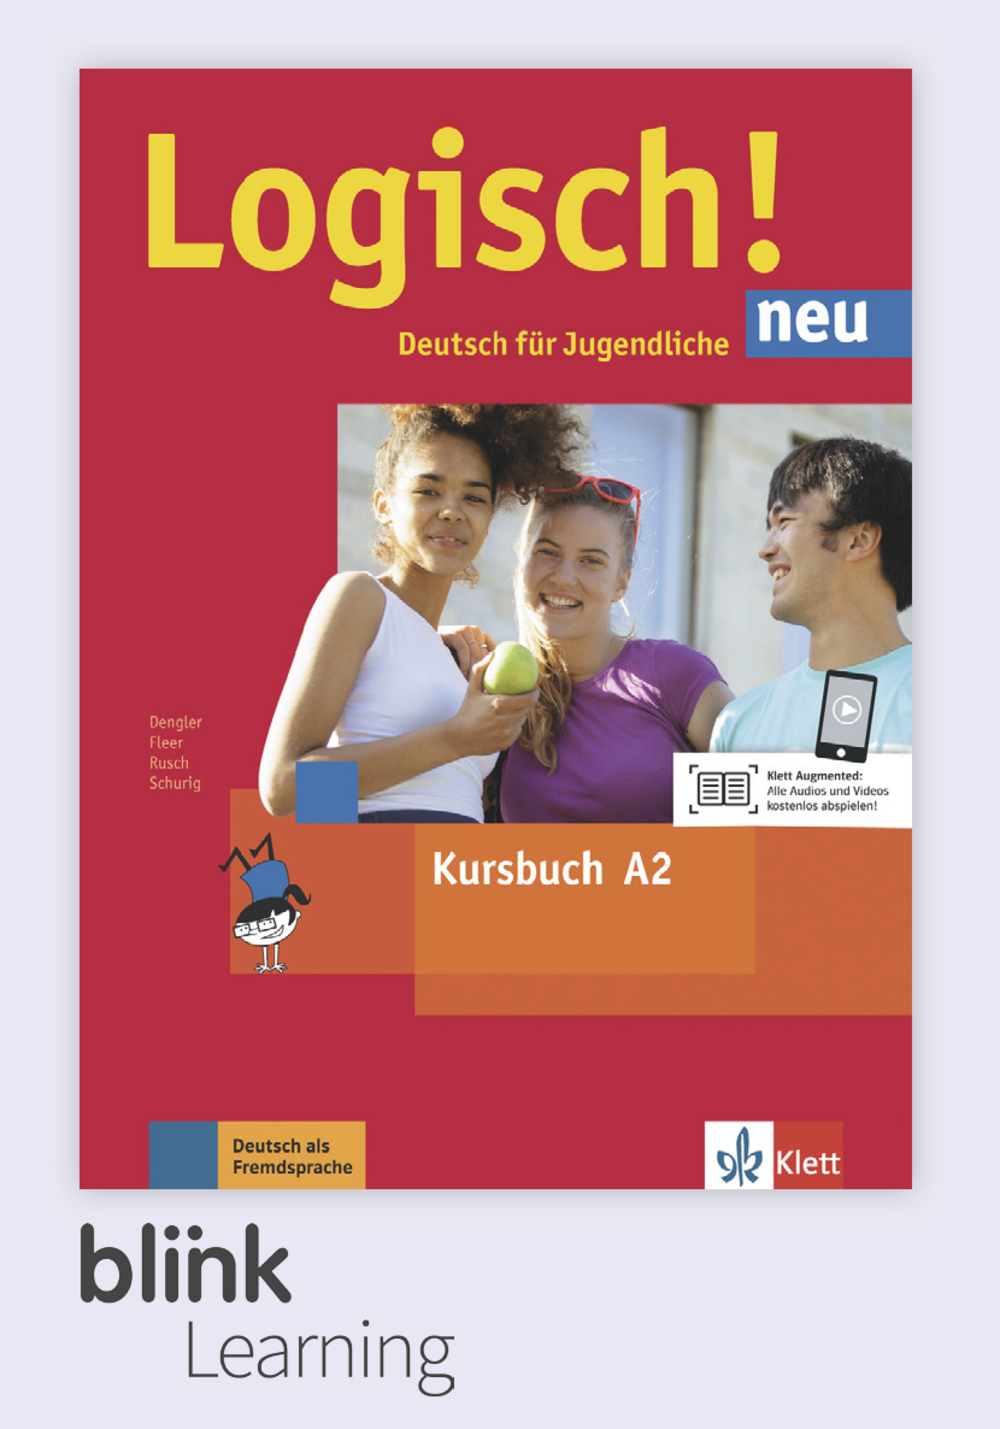 Logisch! neu A2 Digital Kursbuch fur Lernende / Цифровой учебник для ученика